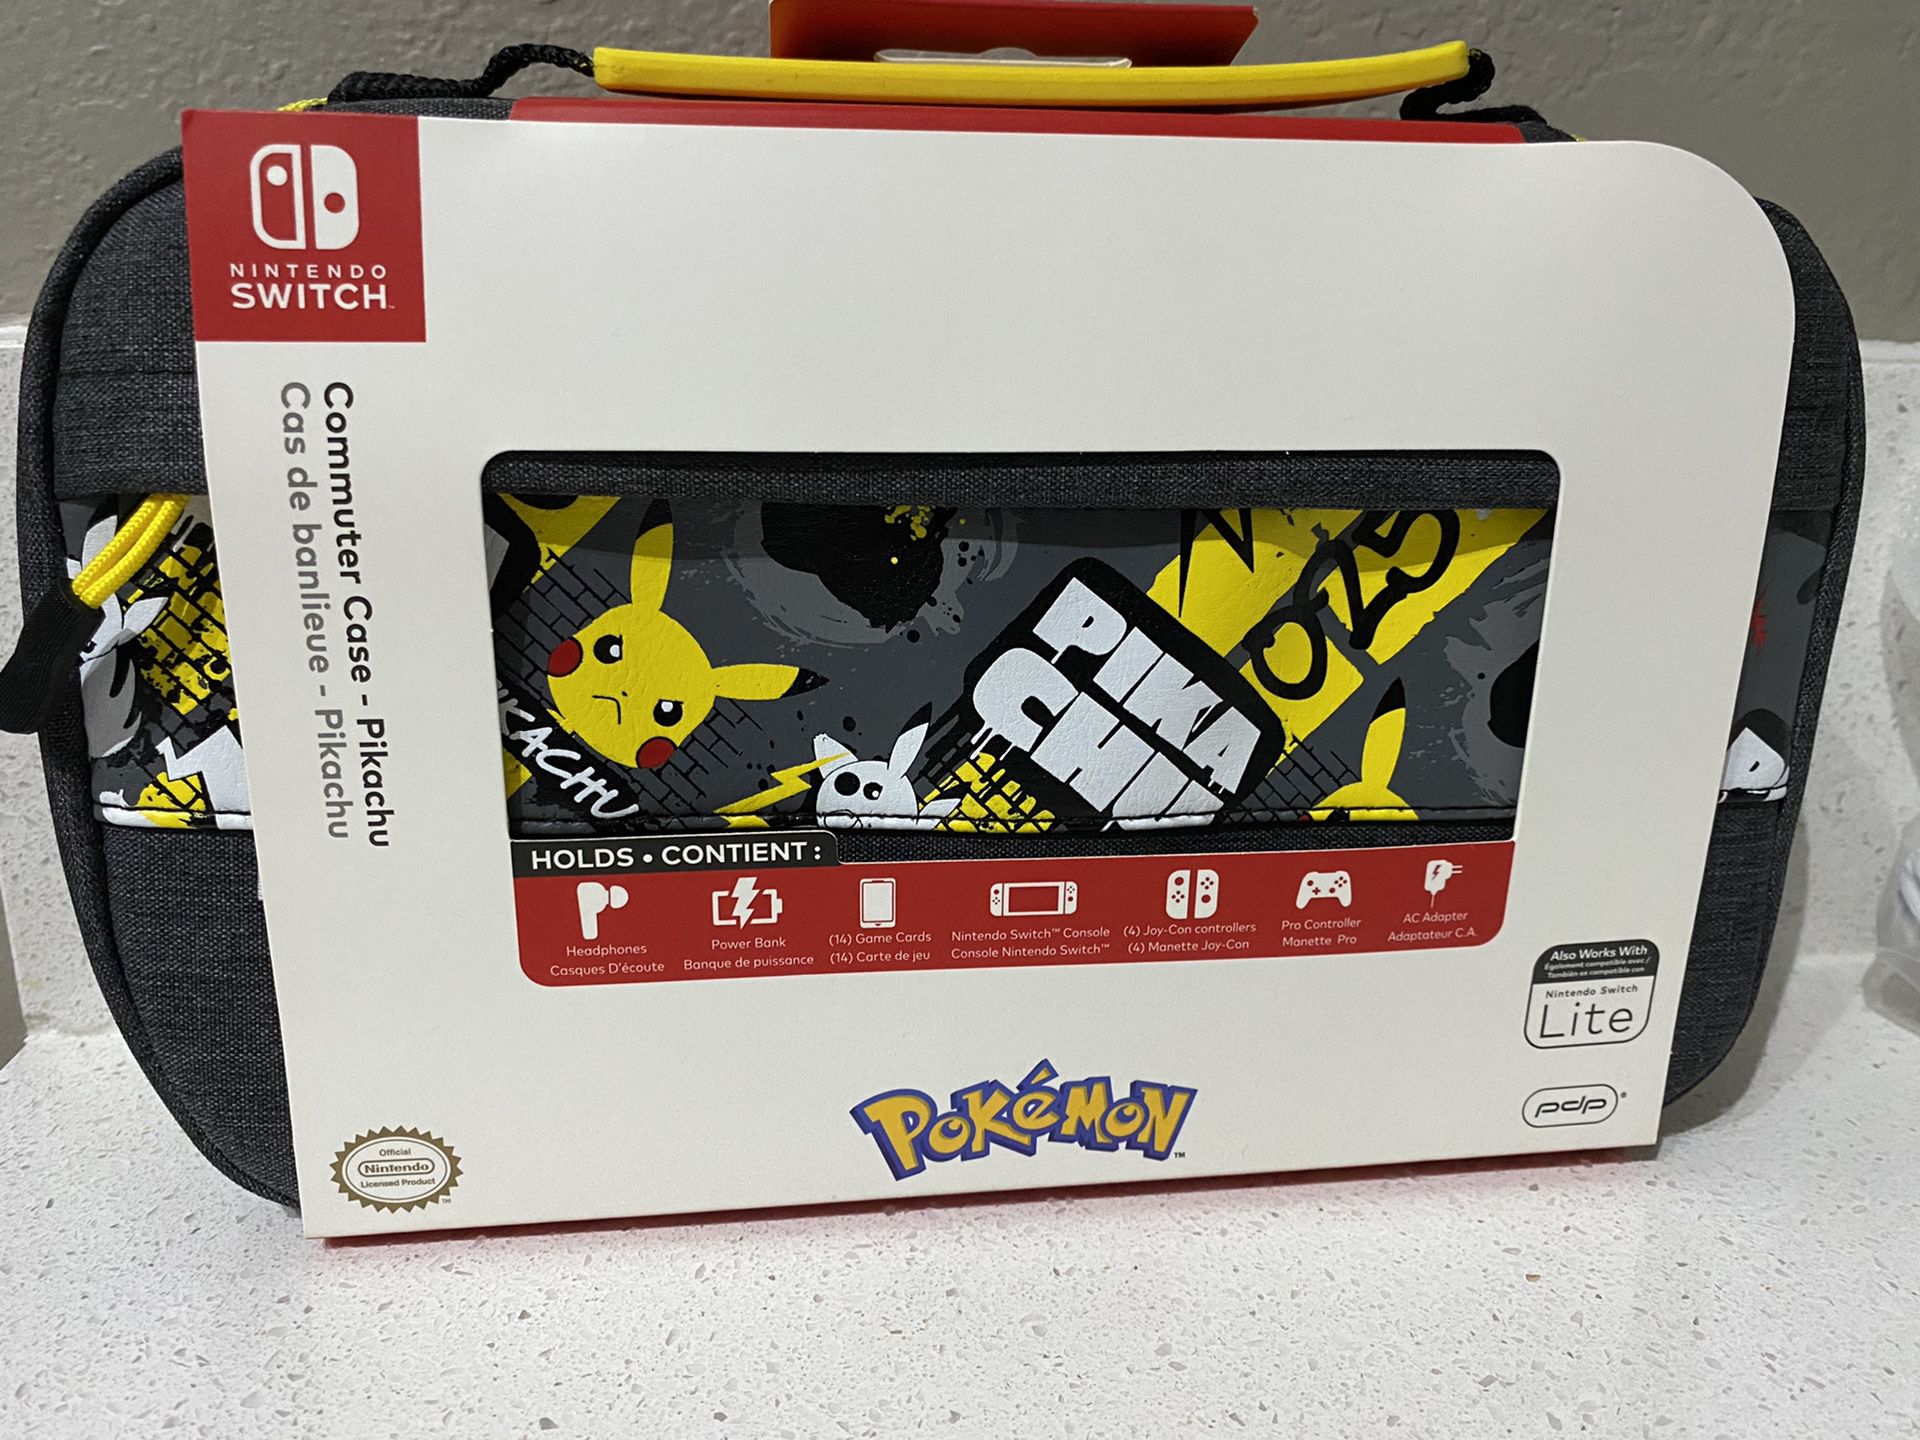 Pokémon commuter Nintendo switch case